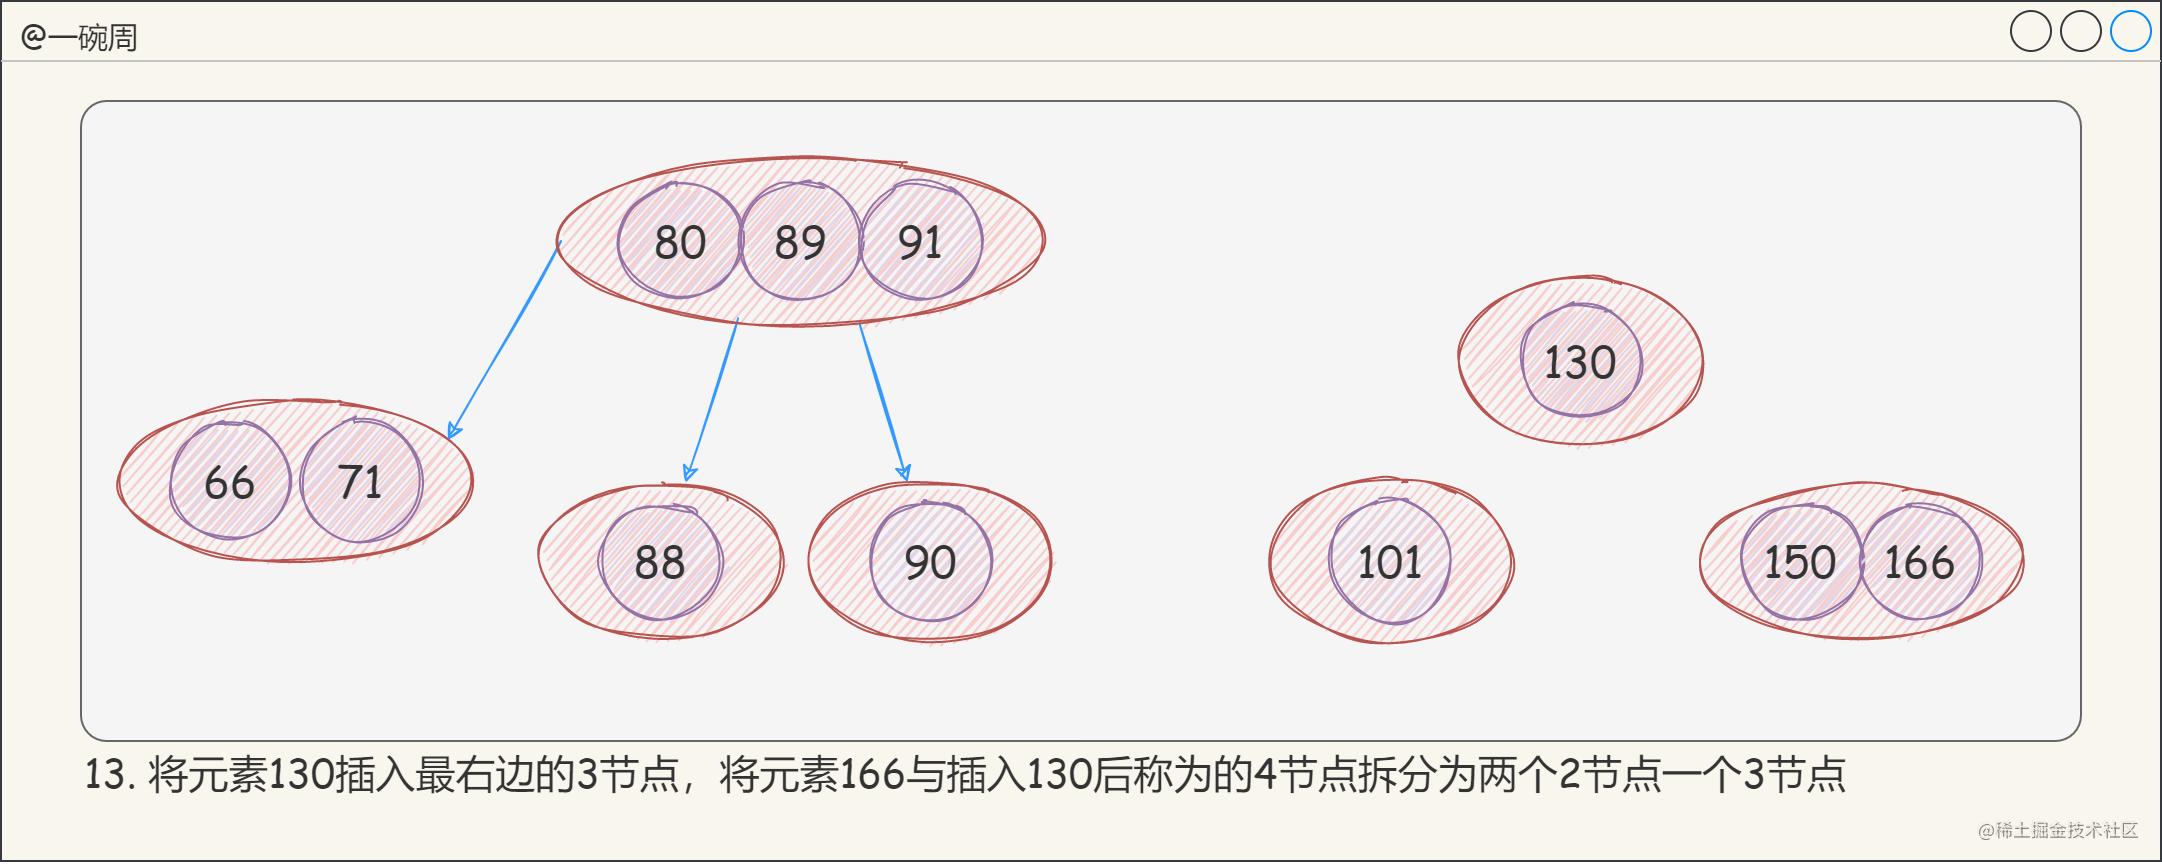 13_2-3-4樹的構建過程9_LM9eUf3FHO.png